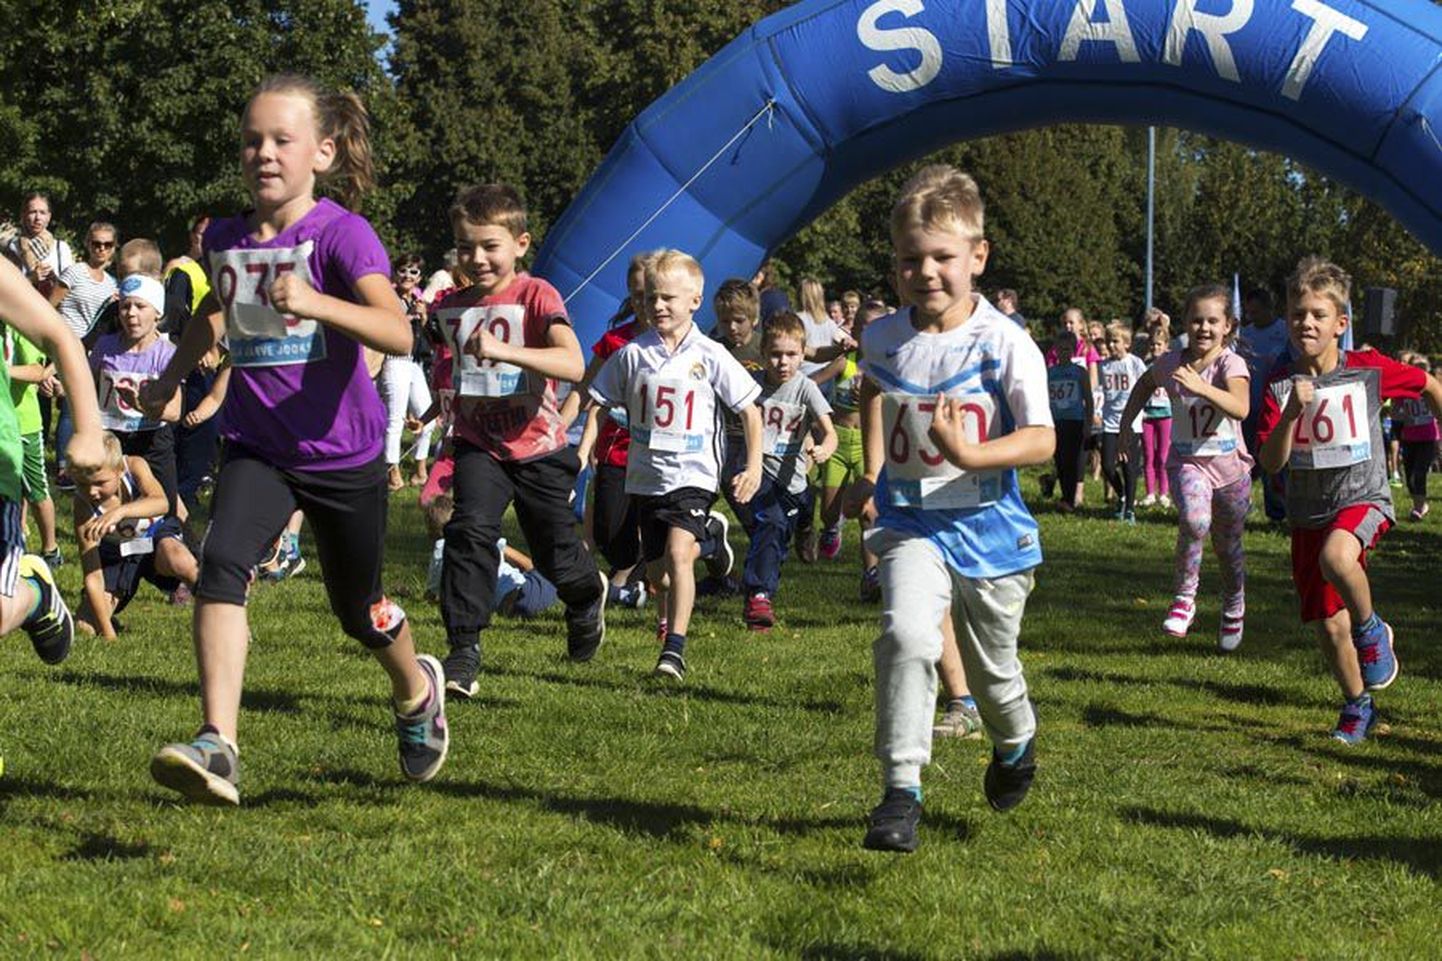 Laupäeval teoks saanud 66. laste Paala järve jooks kujunes tänu imeilusale ilmale osavõtjate arvult sügiseste jooksude seas rekordiliseks: selle lõpetas 552 noort spordisõpra, sealhulgas 177 tillut.